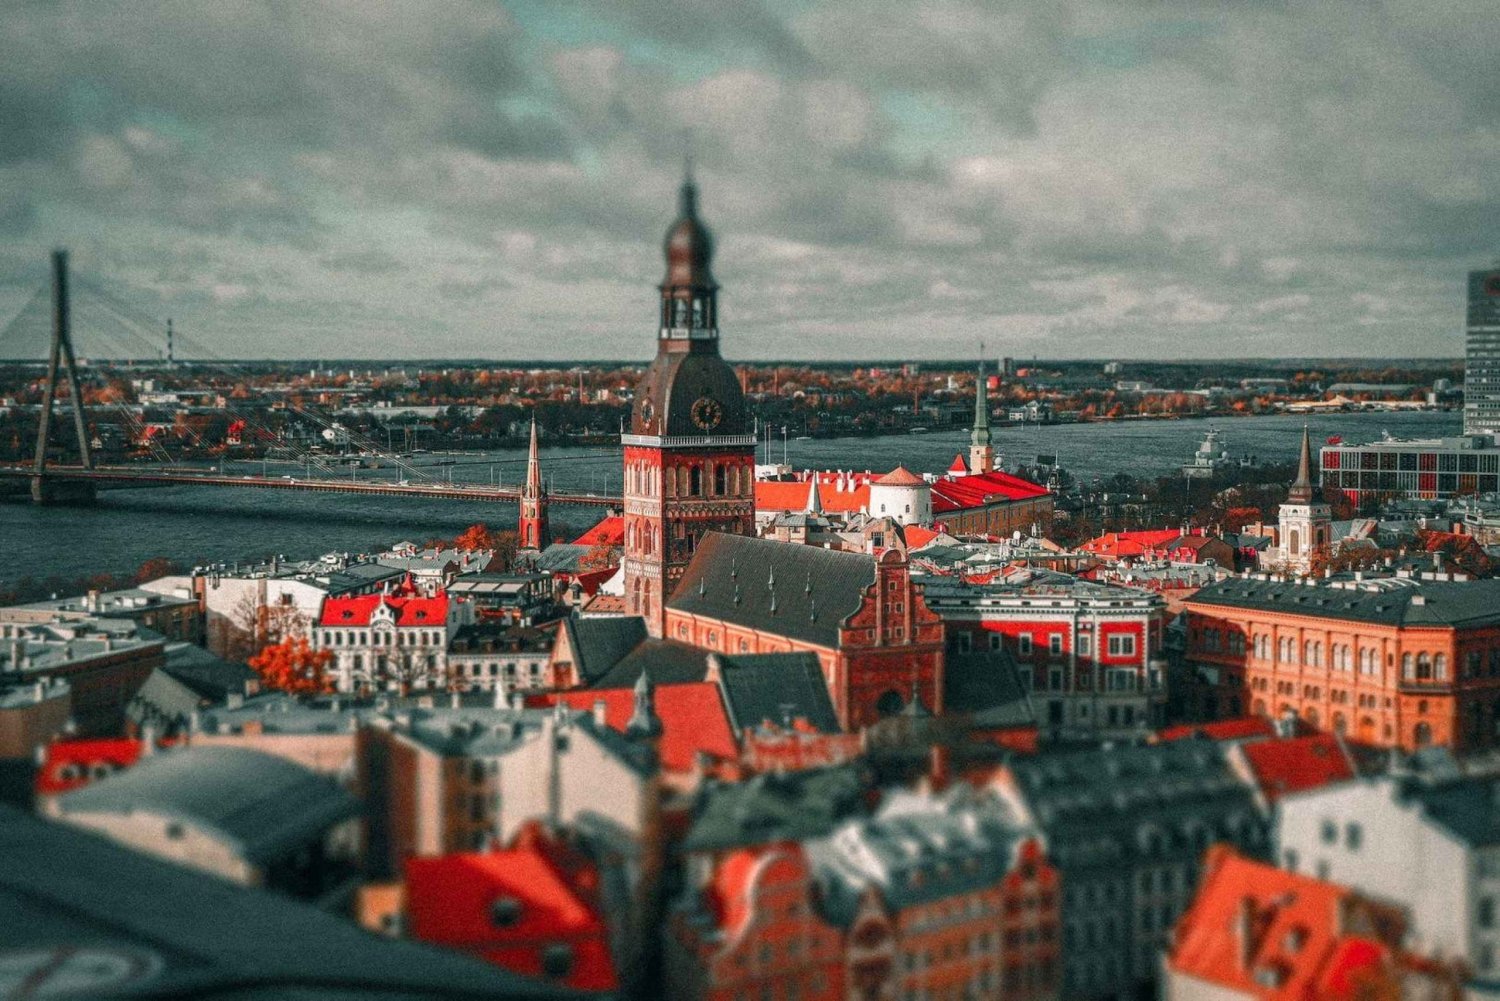 Visite guidée audio de la vieille ville de Riga sur votre téléphone (ENG)